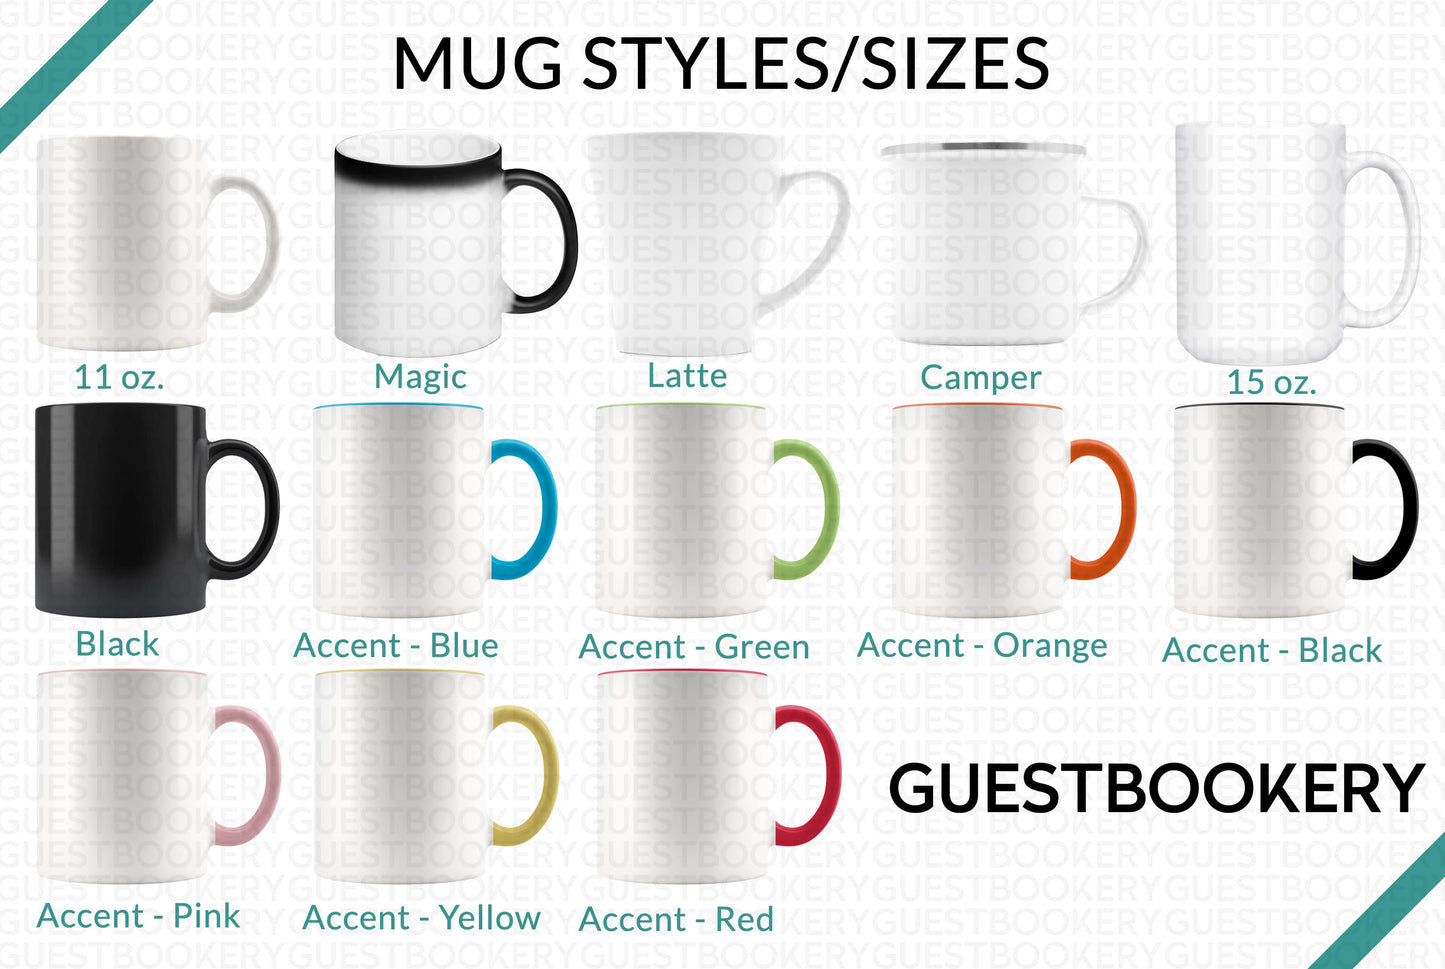 Custom Face Magic Mug